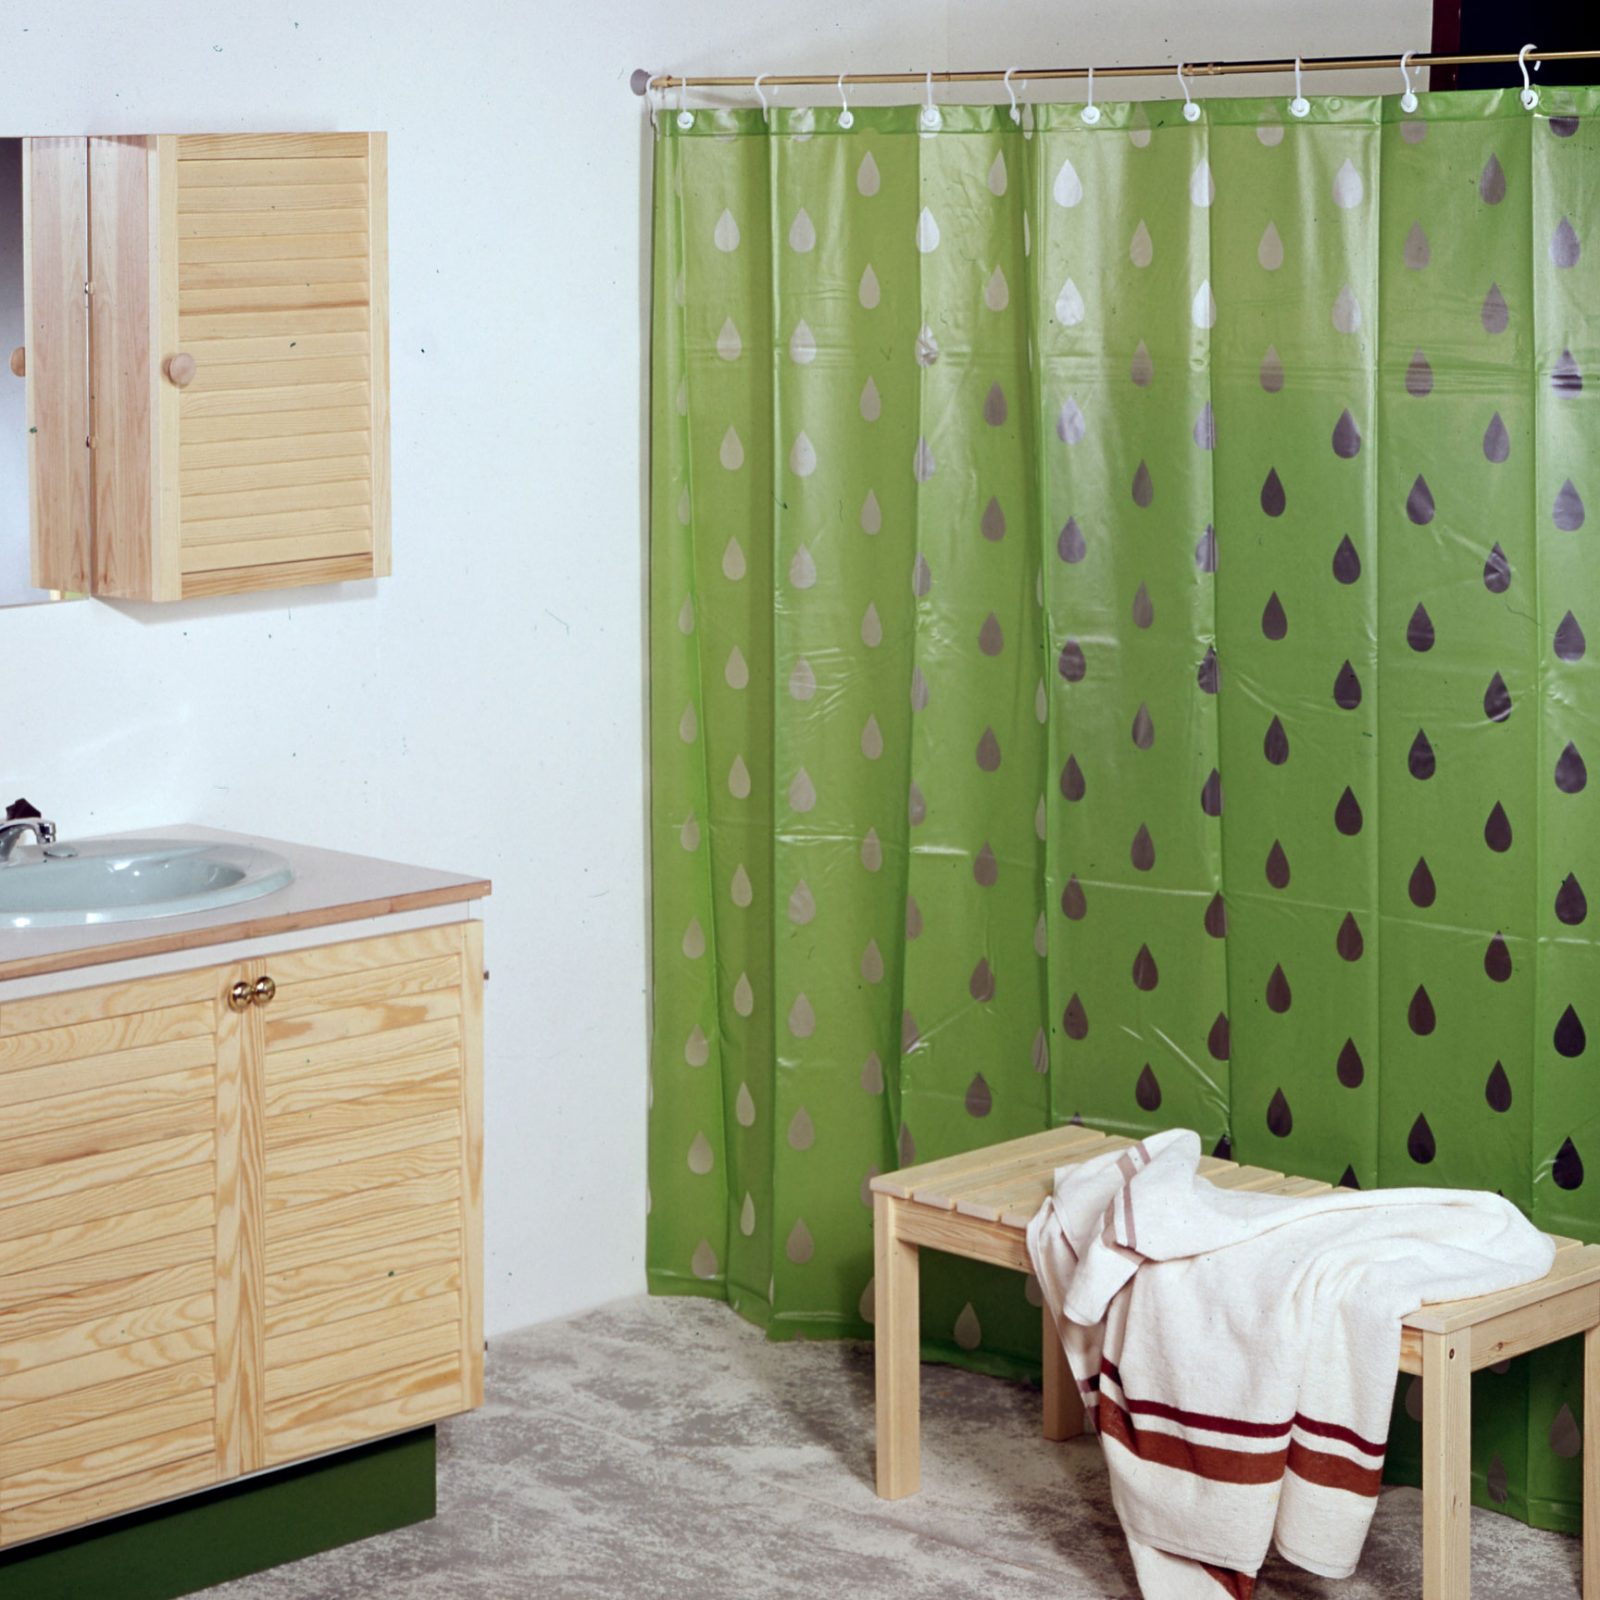 Badrum med träinredning i 1970-talsstil och droppmönstrat grönt duschdraperi i plast, PLASK.